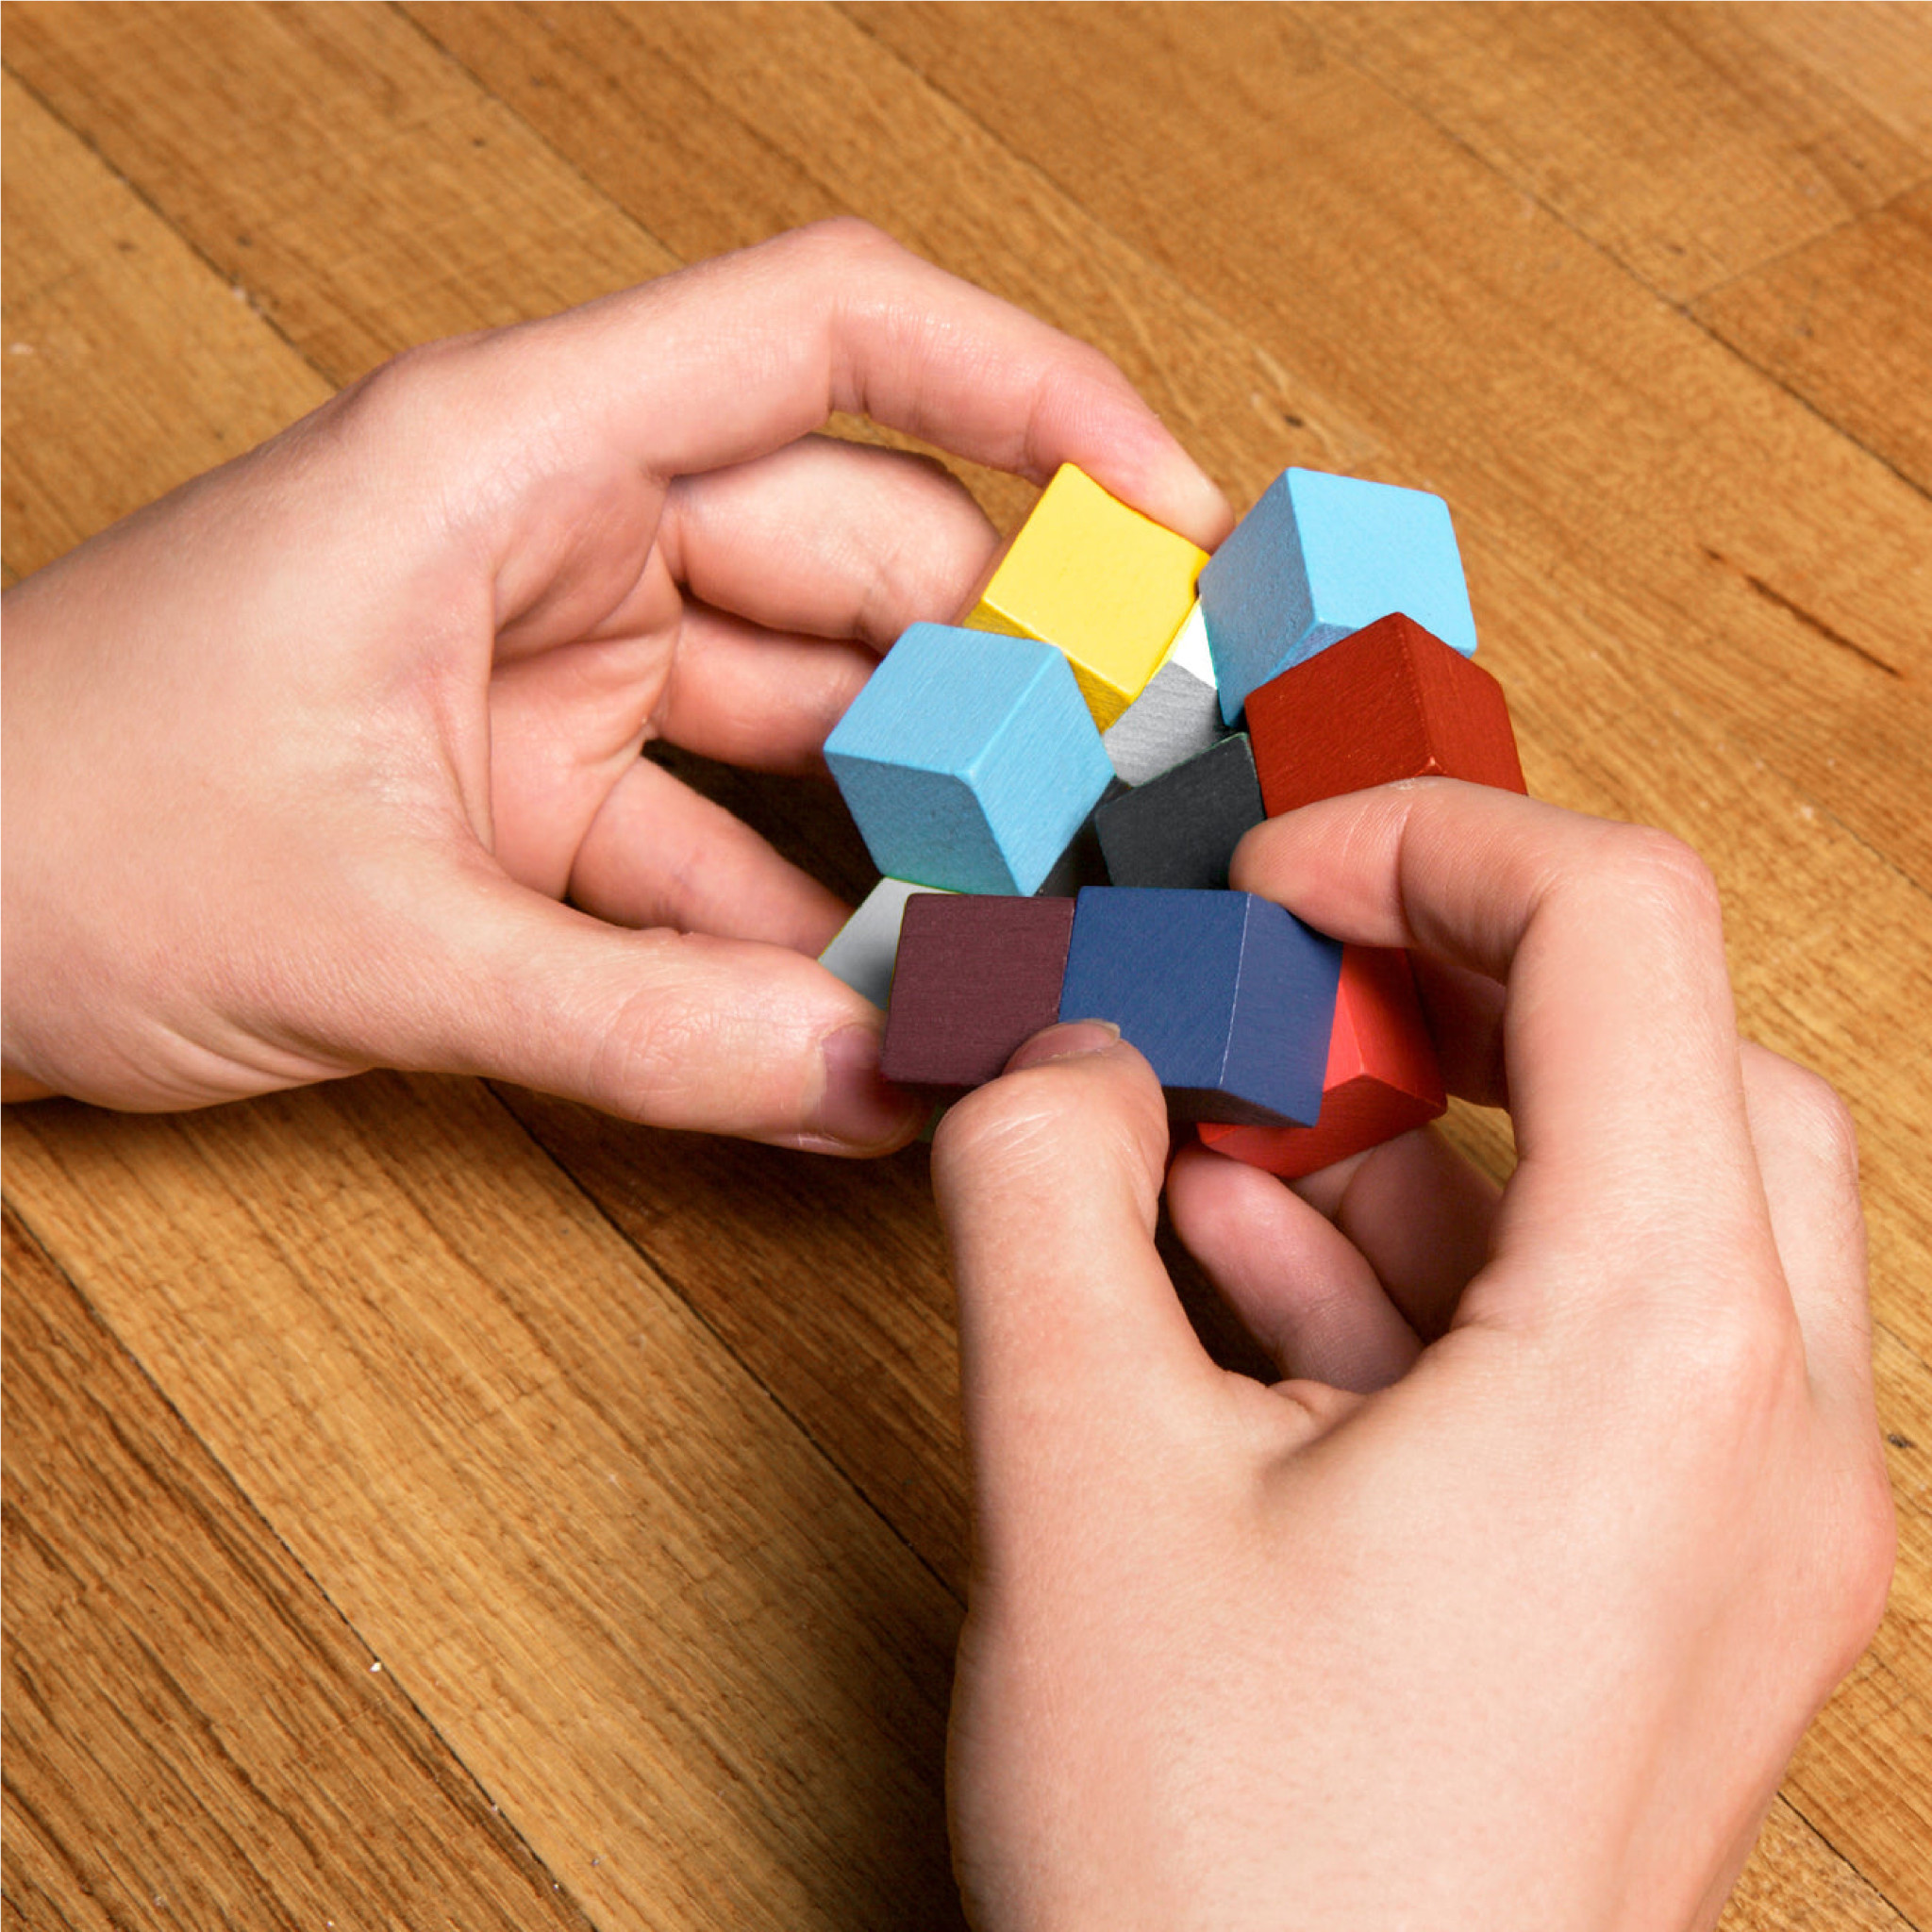 3д куб Вуден пазл. Кубик 3d Puzzle Cube. Фиджет куб. Wooden Puzzle 3d Cube собрать. Головоломки пожалуйста